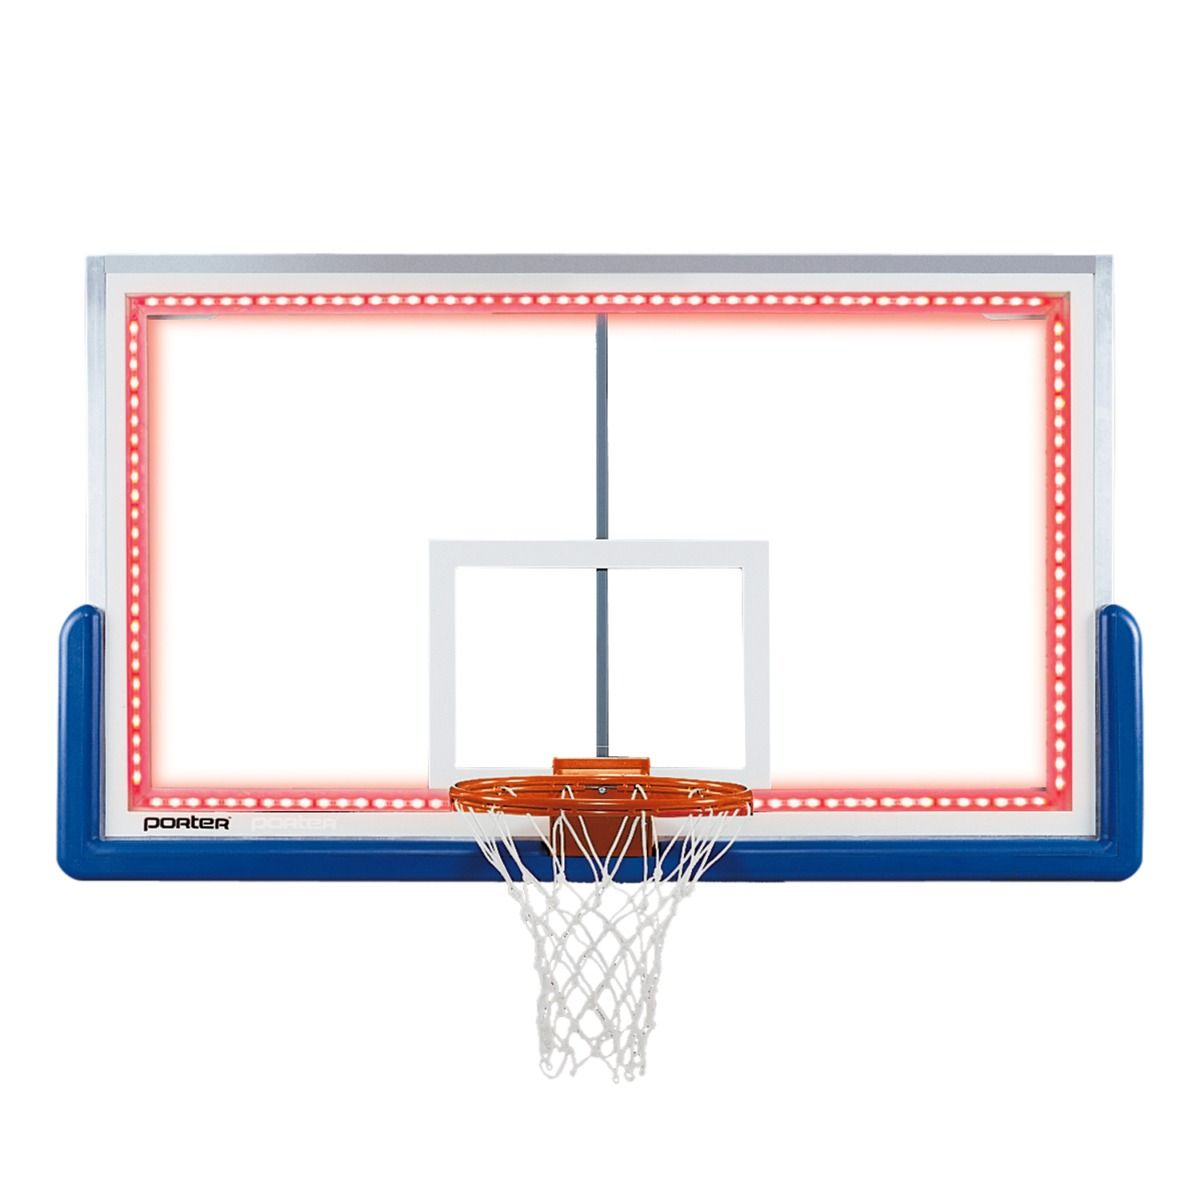 Porter Basketball Backboard Perimeter LED Light Kits